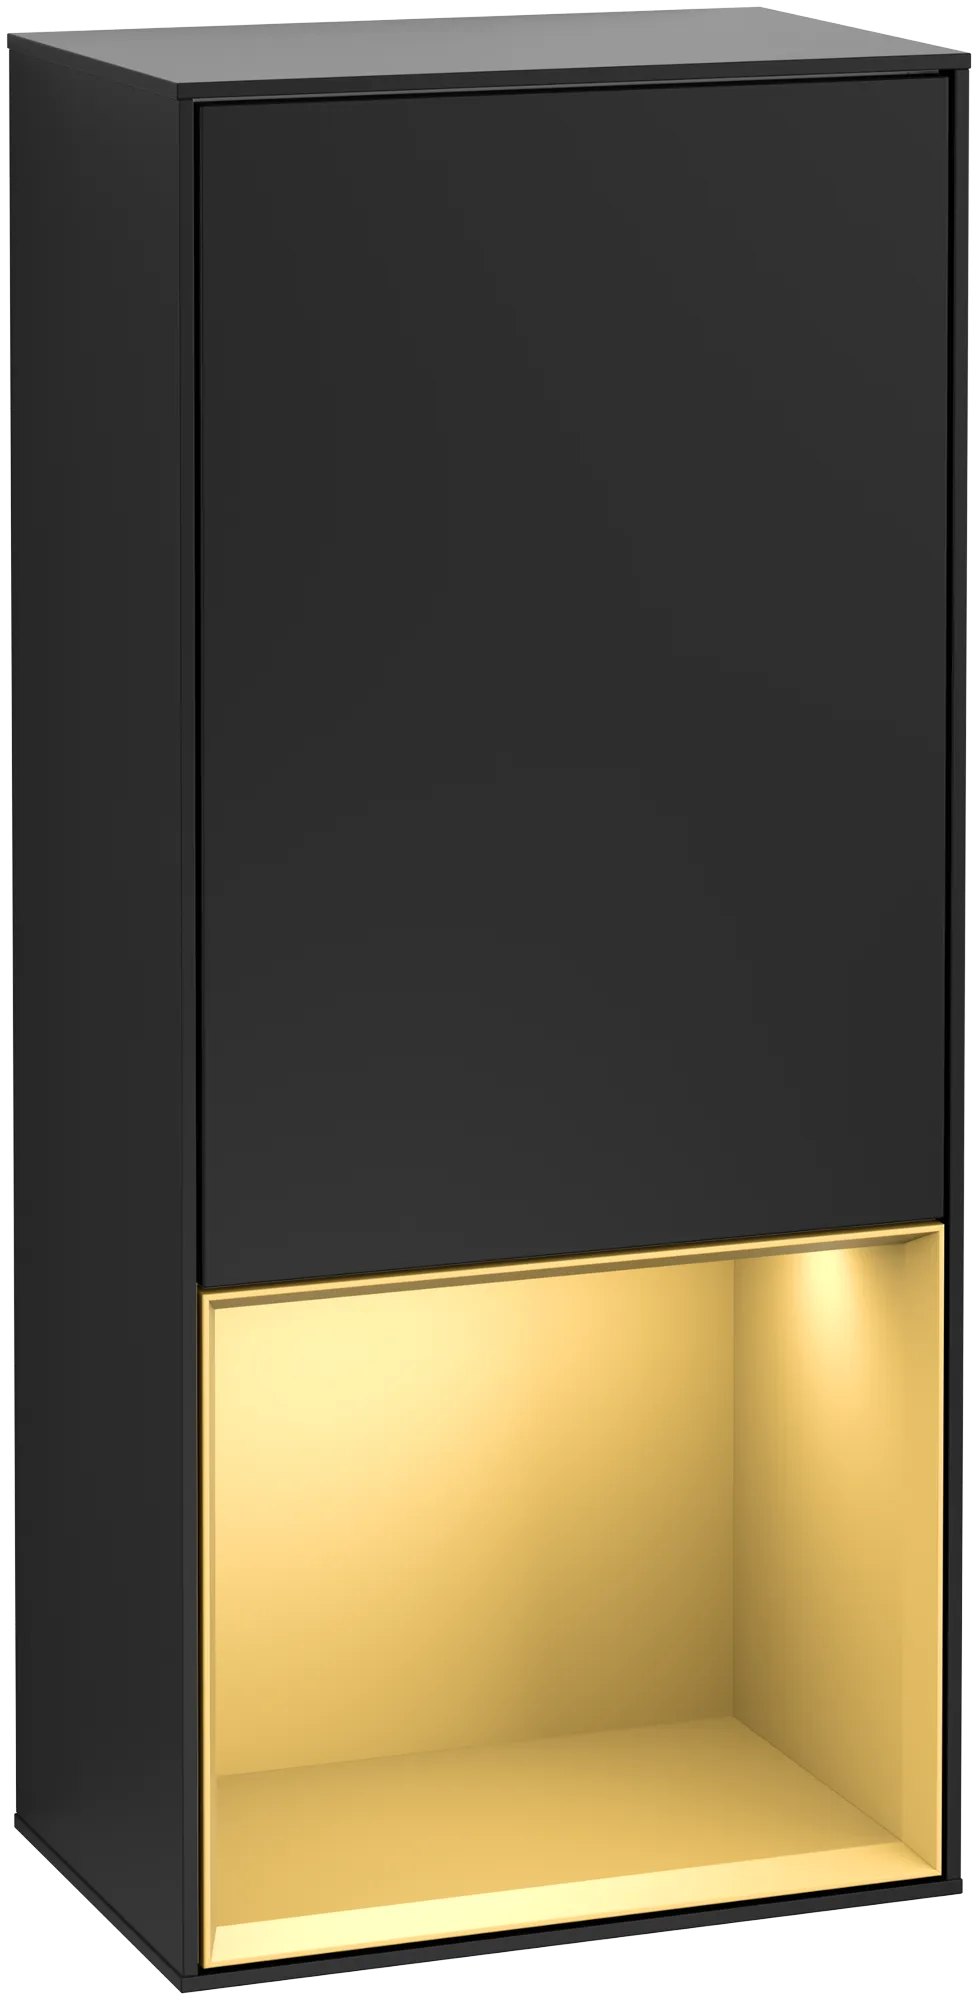 Bild von VILLEROY BOCH Finion Seitenschrank, mit Beleuchtung, 1 Tür, 418 x 936 x 270 mm, Black Matt Lacquer / Gold Matt Lacquer #G550HFPD